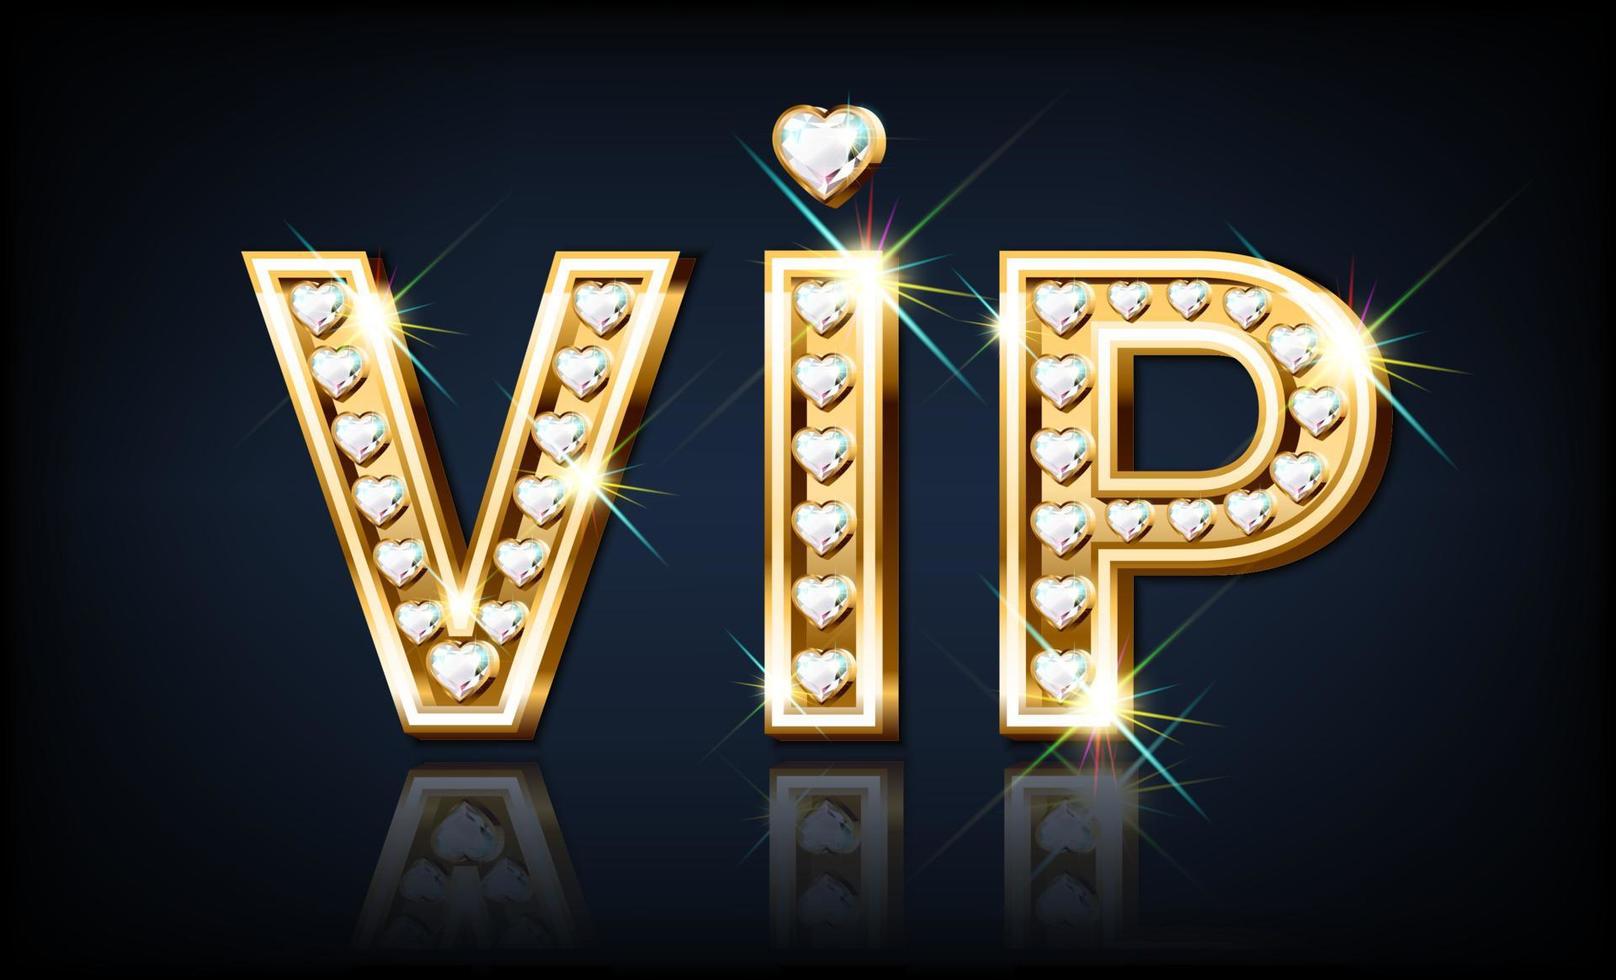 woord vip is gouden met diamanten in de vorm van een hart. sieraden lettertype. 3d realistisch stijl vector illustratie.